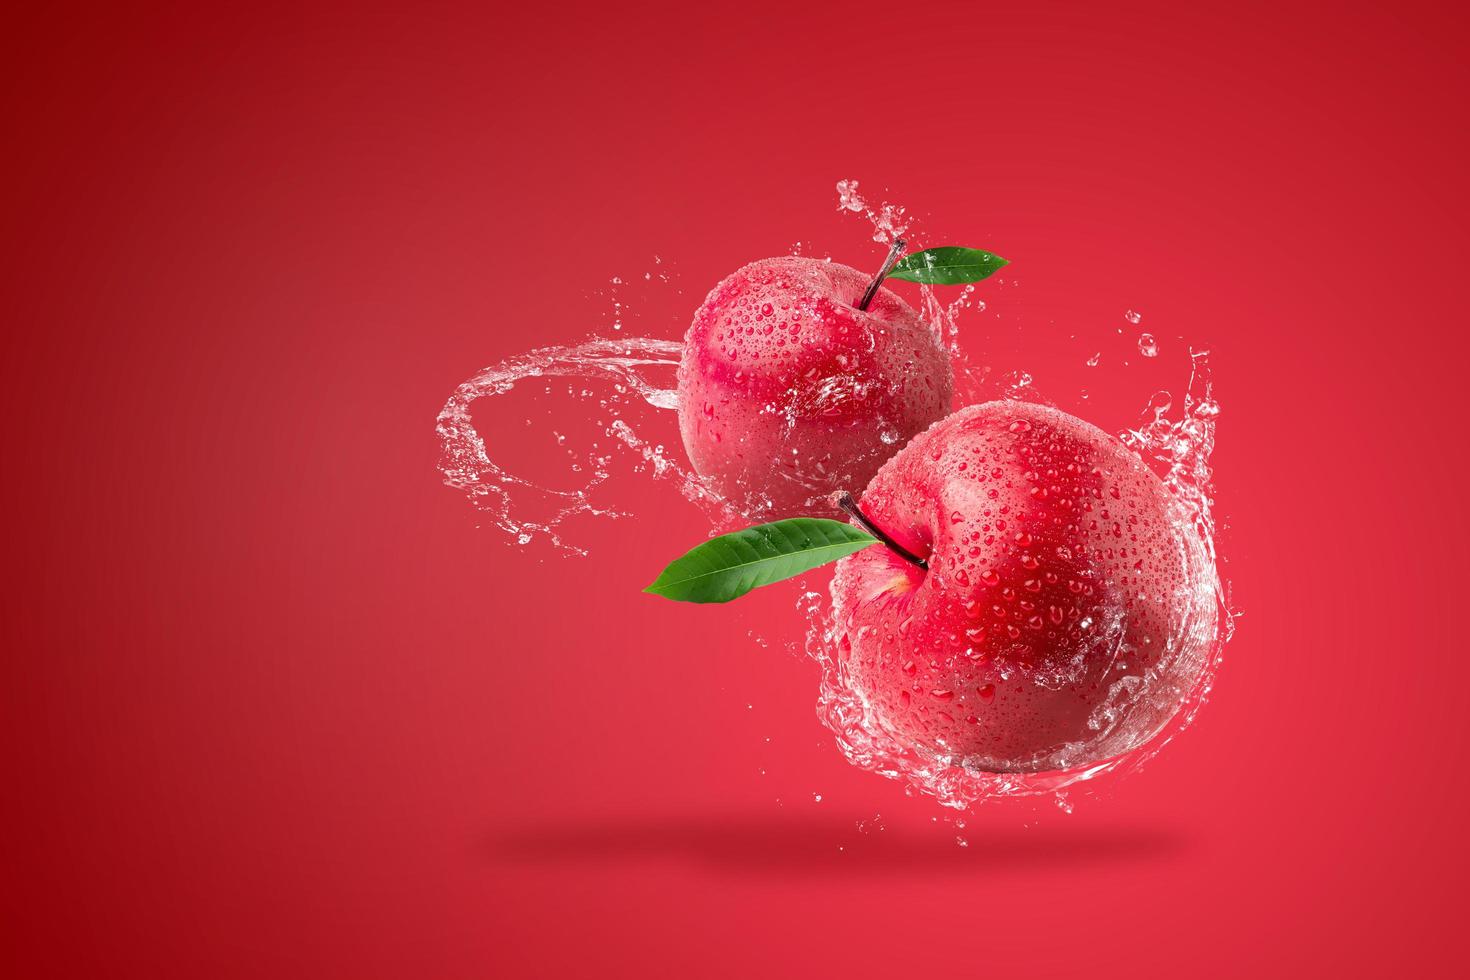 acqua che spruzza sulla mela rossa fresca foto